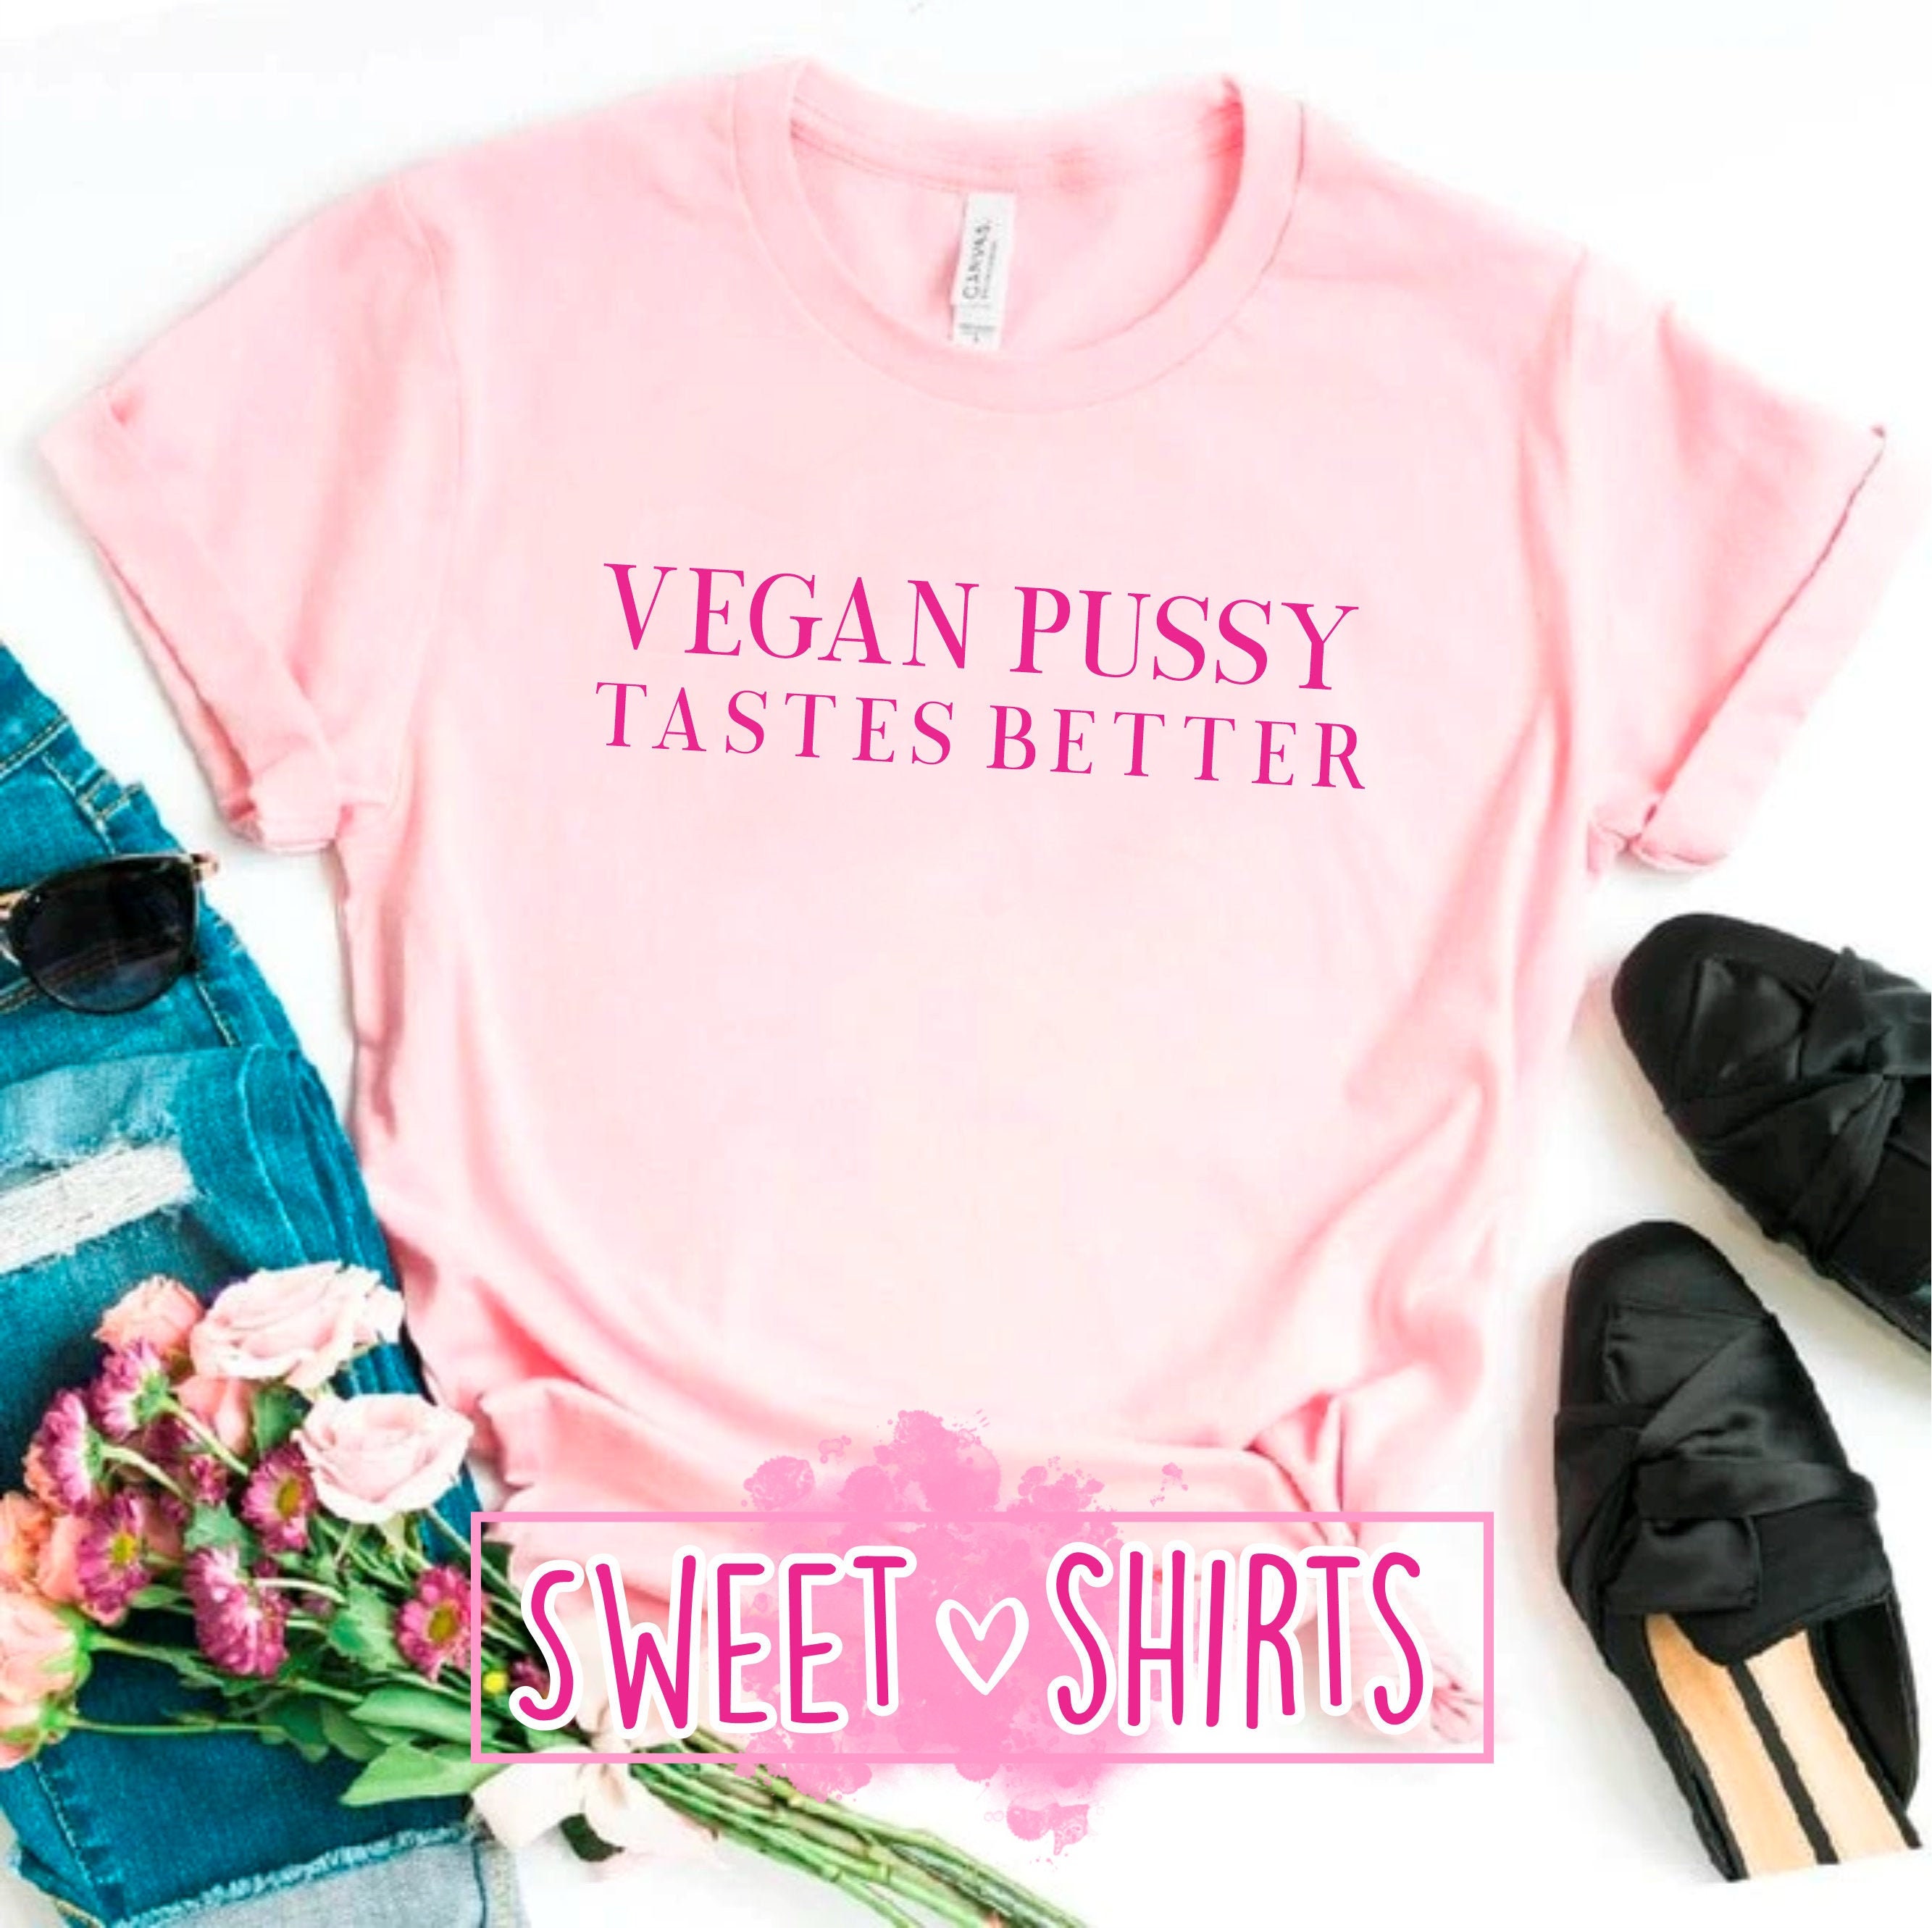 Vegan Pussy Tastes Better T Shirt Best Seller Funny Shirt Etsy